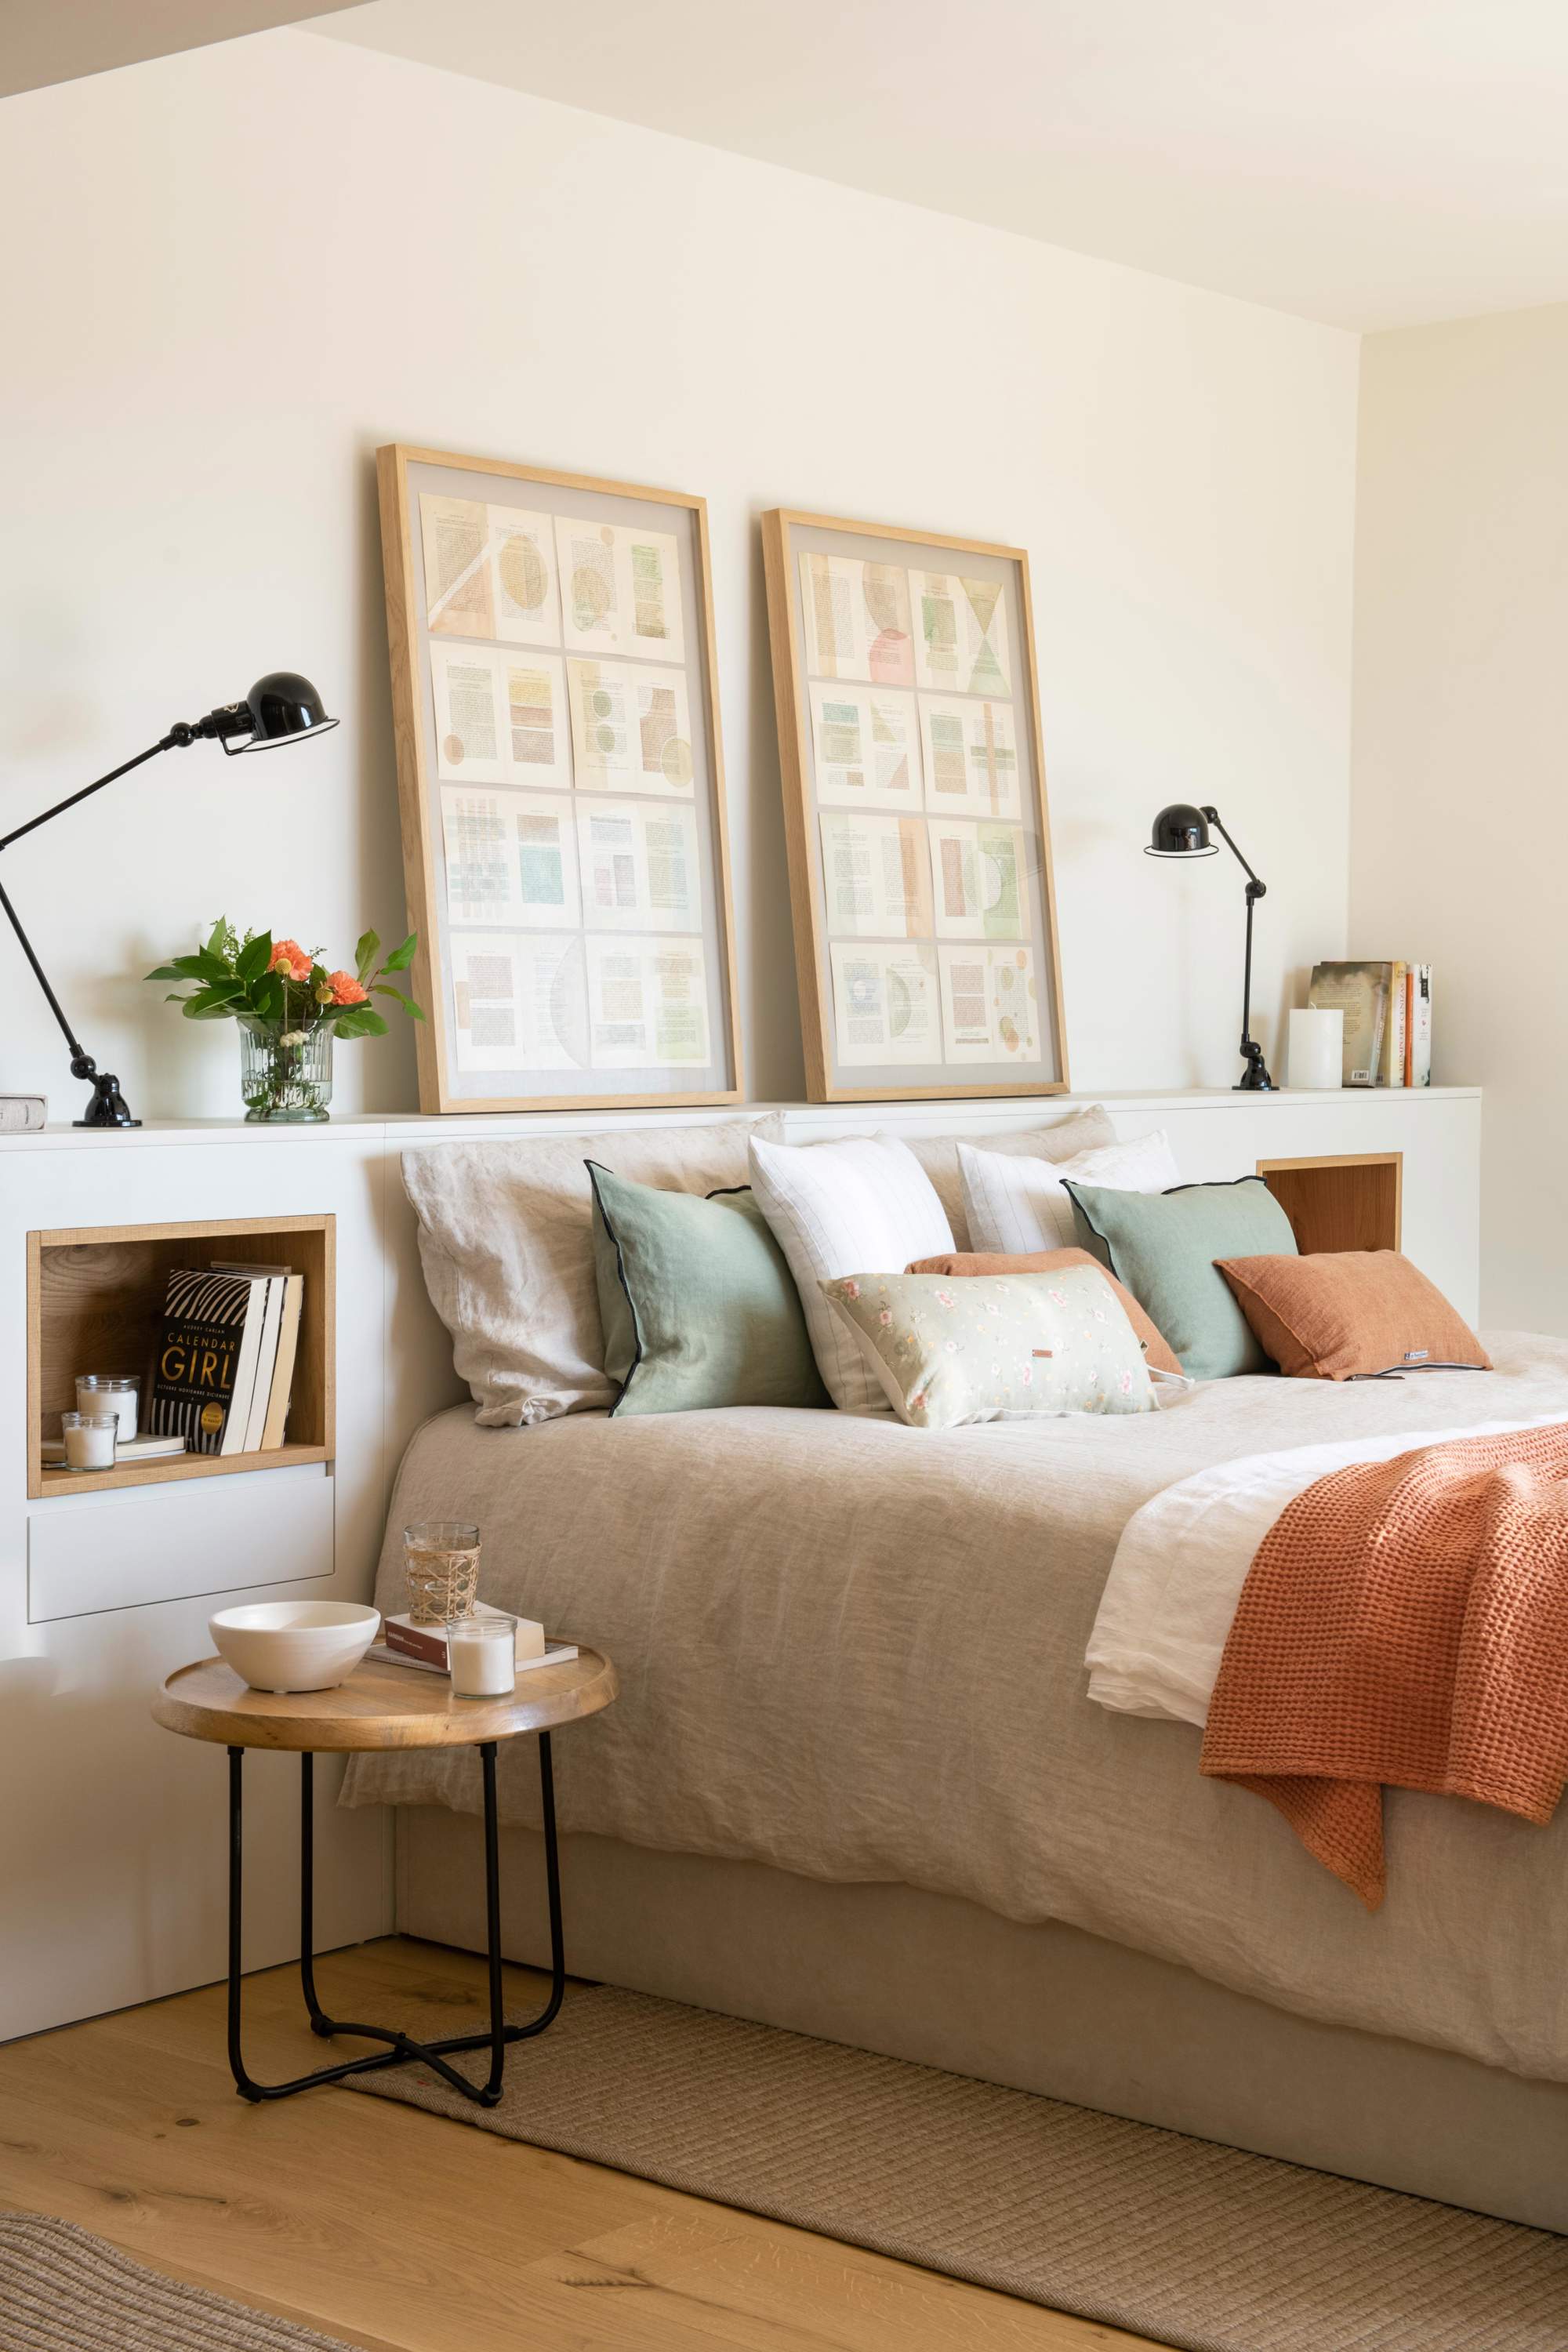 Dormitorio con cabecero de obra, mesillas redondas plegables, flexos y cuadros